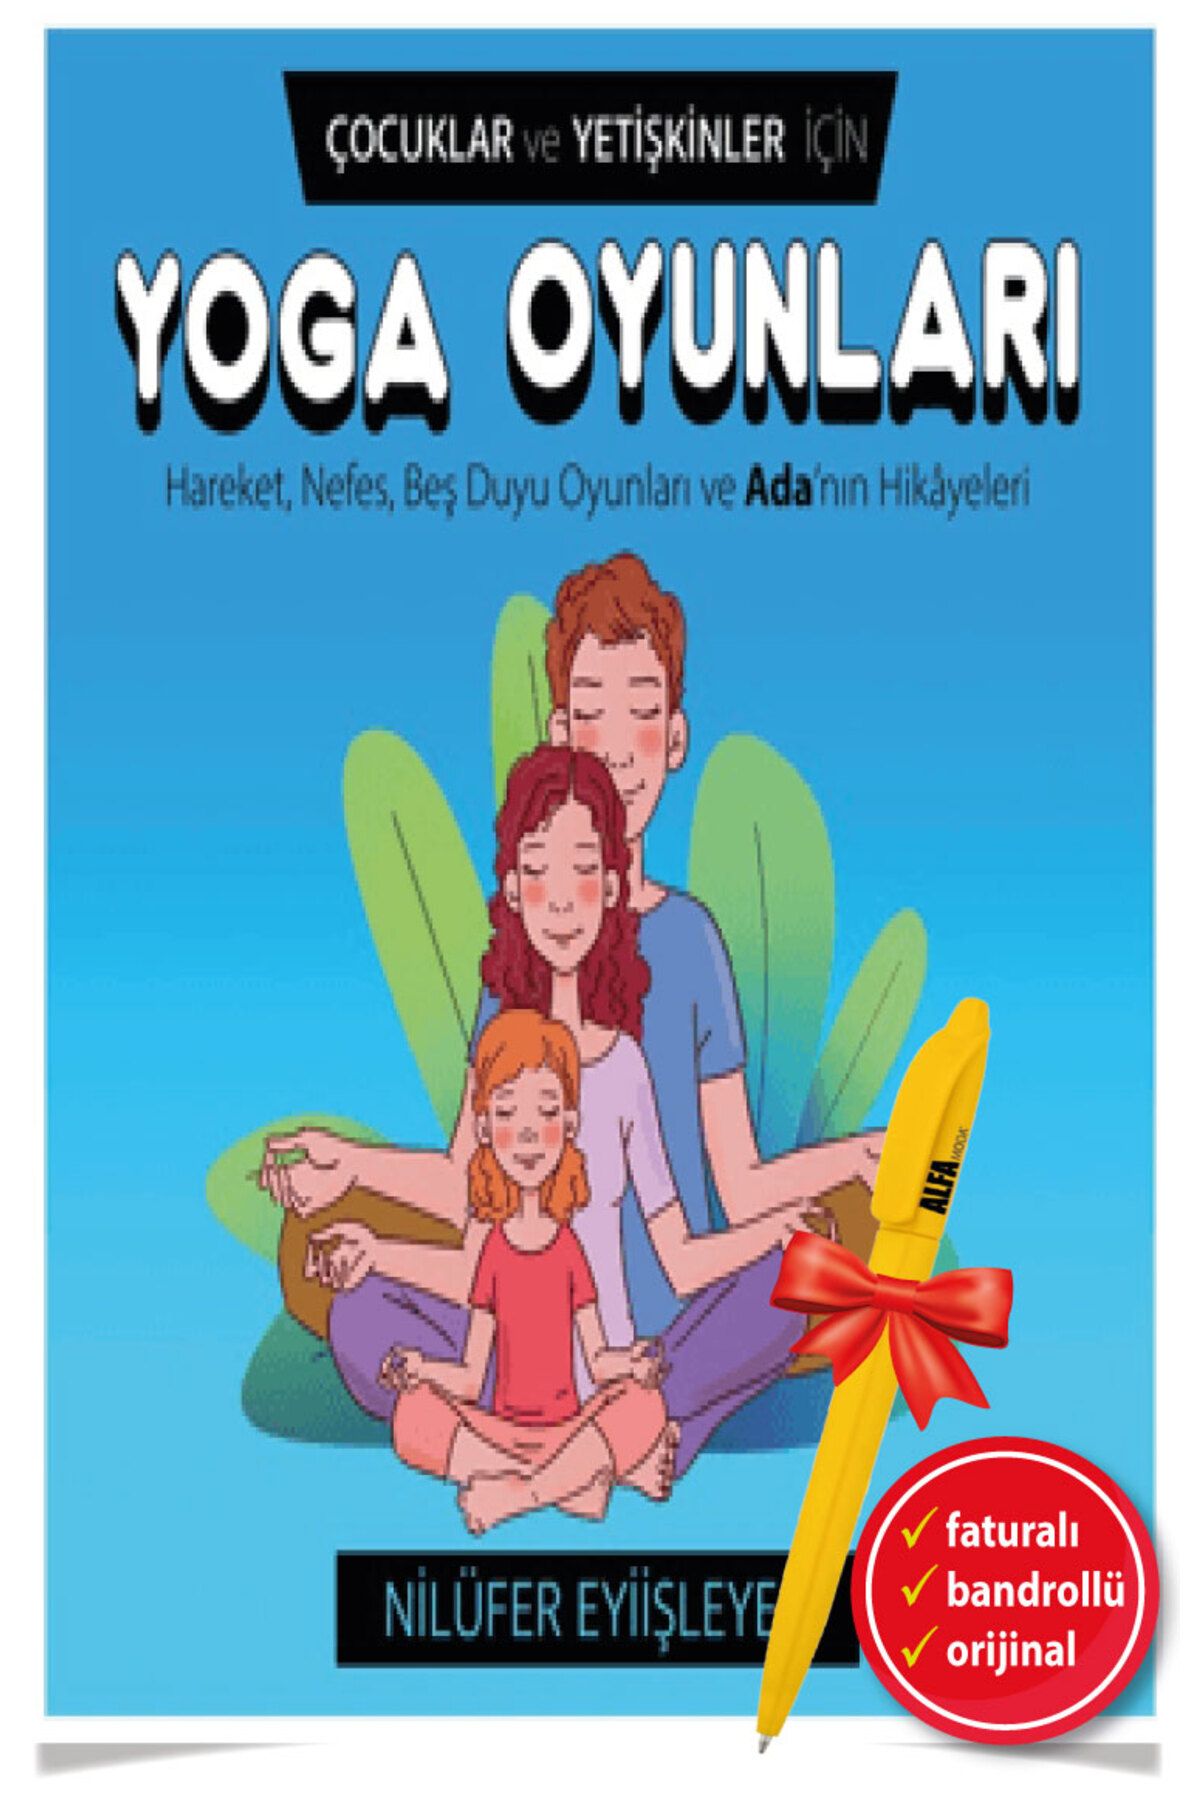 Destek Yayınları Alfa Kalem + Çocuklar ve Yetişkinler İçin Yoga Oyunları kitap / Nilüfer Eyiişleyen - Destek Yayın